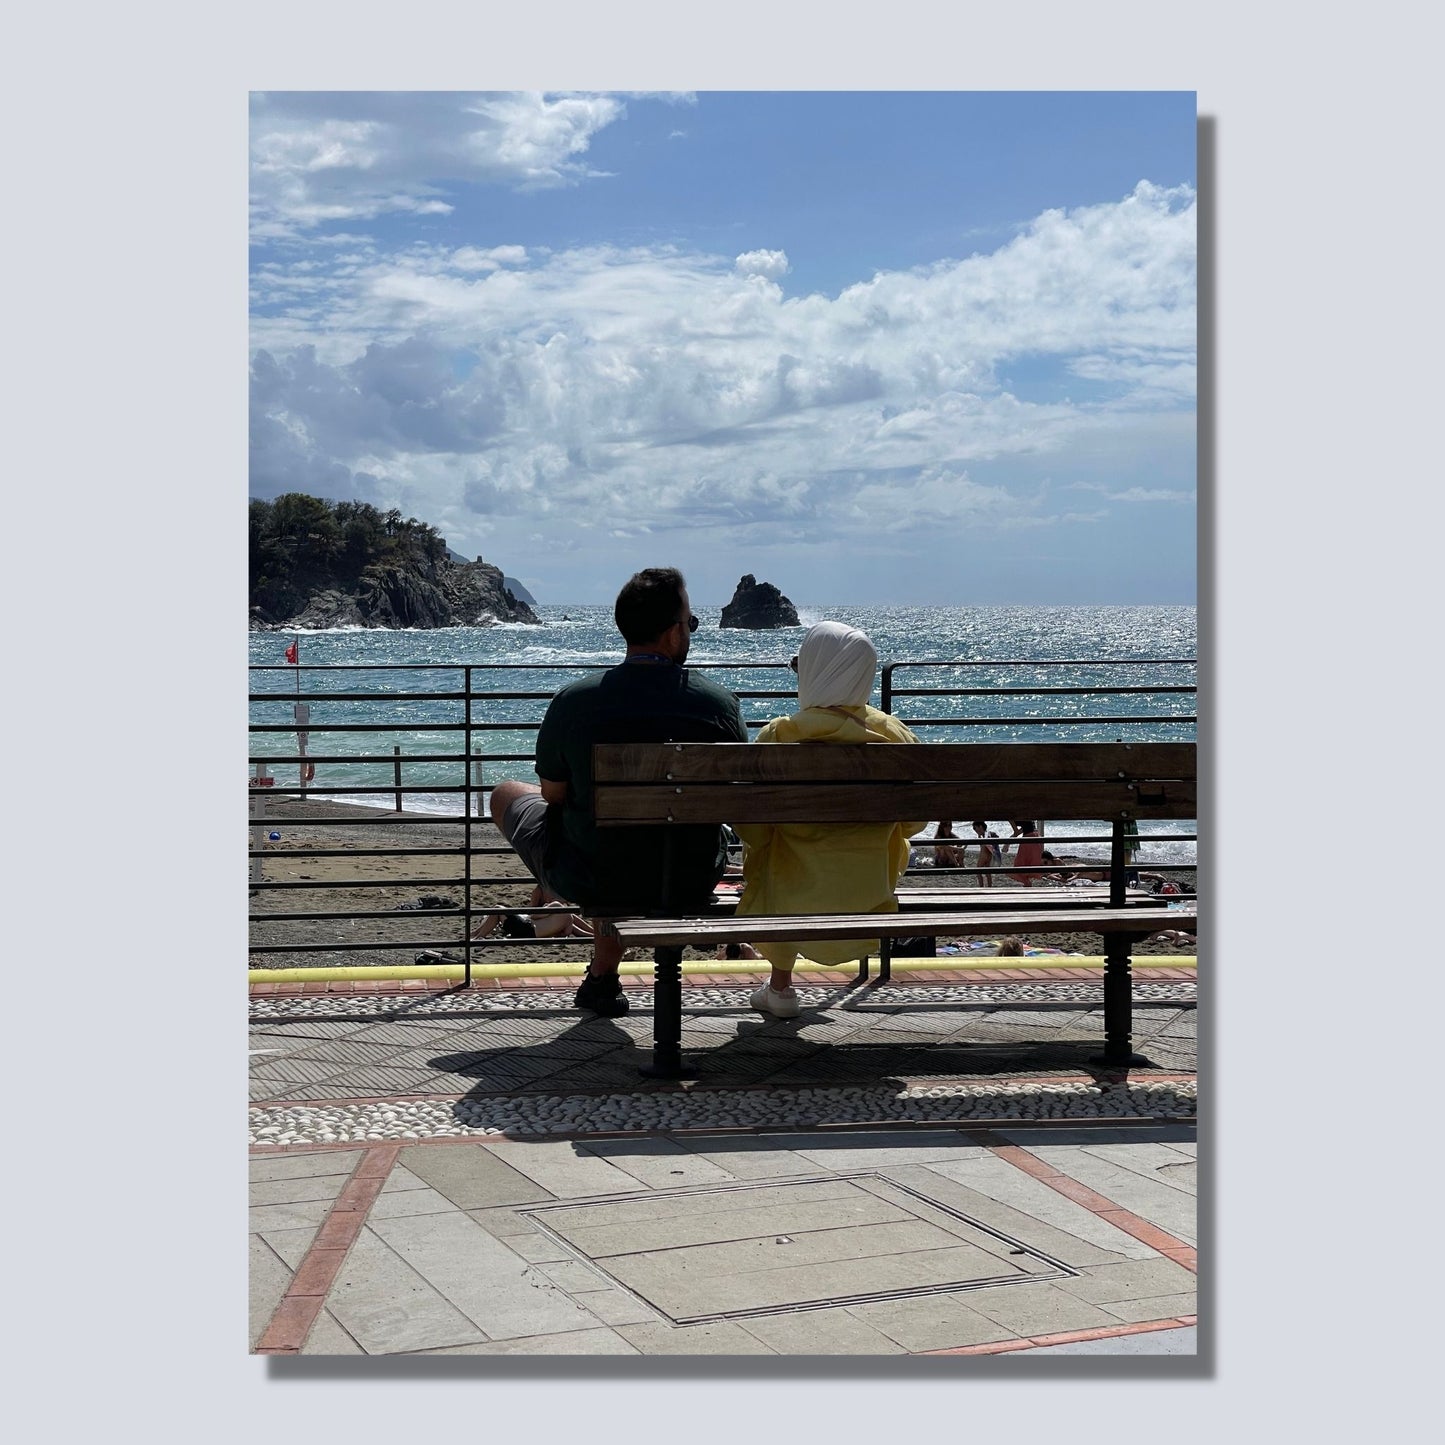 Motiv fra Montereosso al Mare, en av de fem byene i Cinque Terre ved Liguriakysten i Italia. Bildet viser blått middelhav og himmel som helt ned i vannet i horisonten. Her har et par funnet seg godt til rette på en av byens benker. Fri sikt utover Middelhavet så langt øyet ser. Til venstre på bildet går klipper ned i havet. Blå himmel er dekket med noen hvite skyer. Hav og himmel møtes ute i horisonten. Motivet på bildet er på lerret.